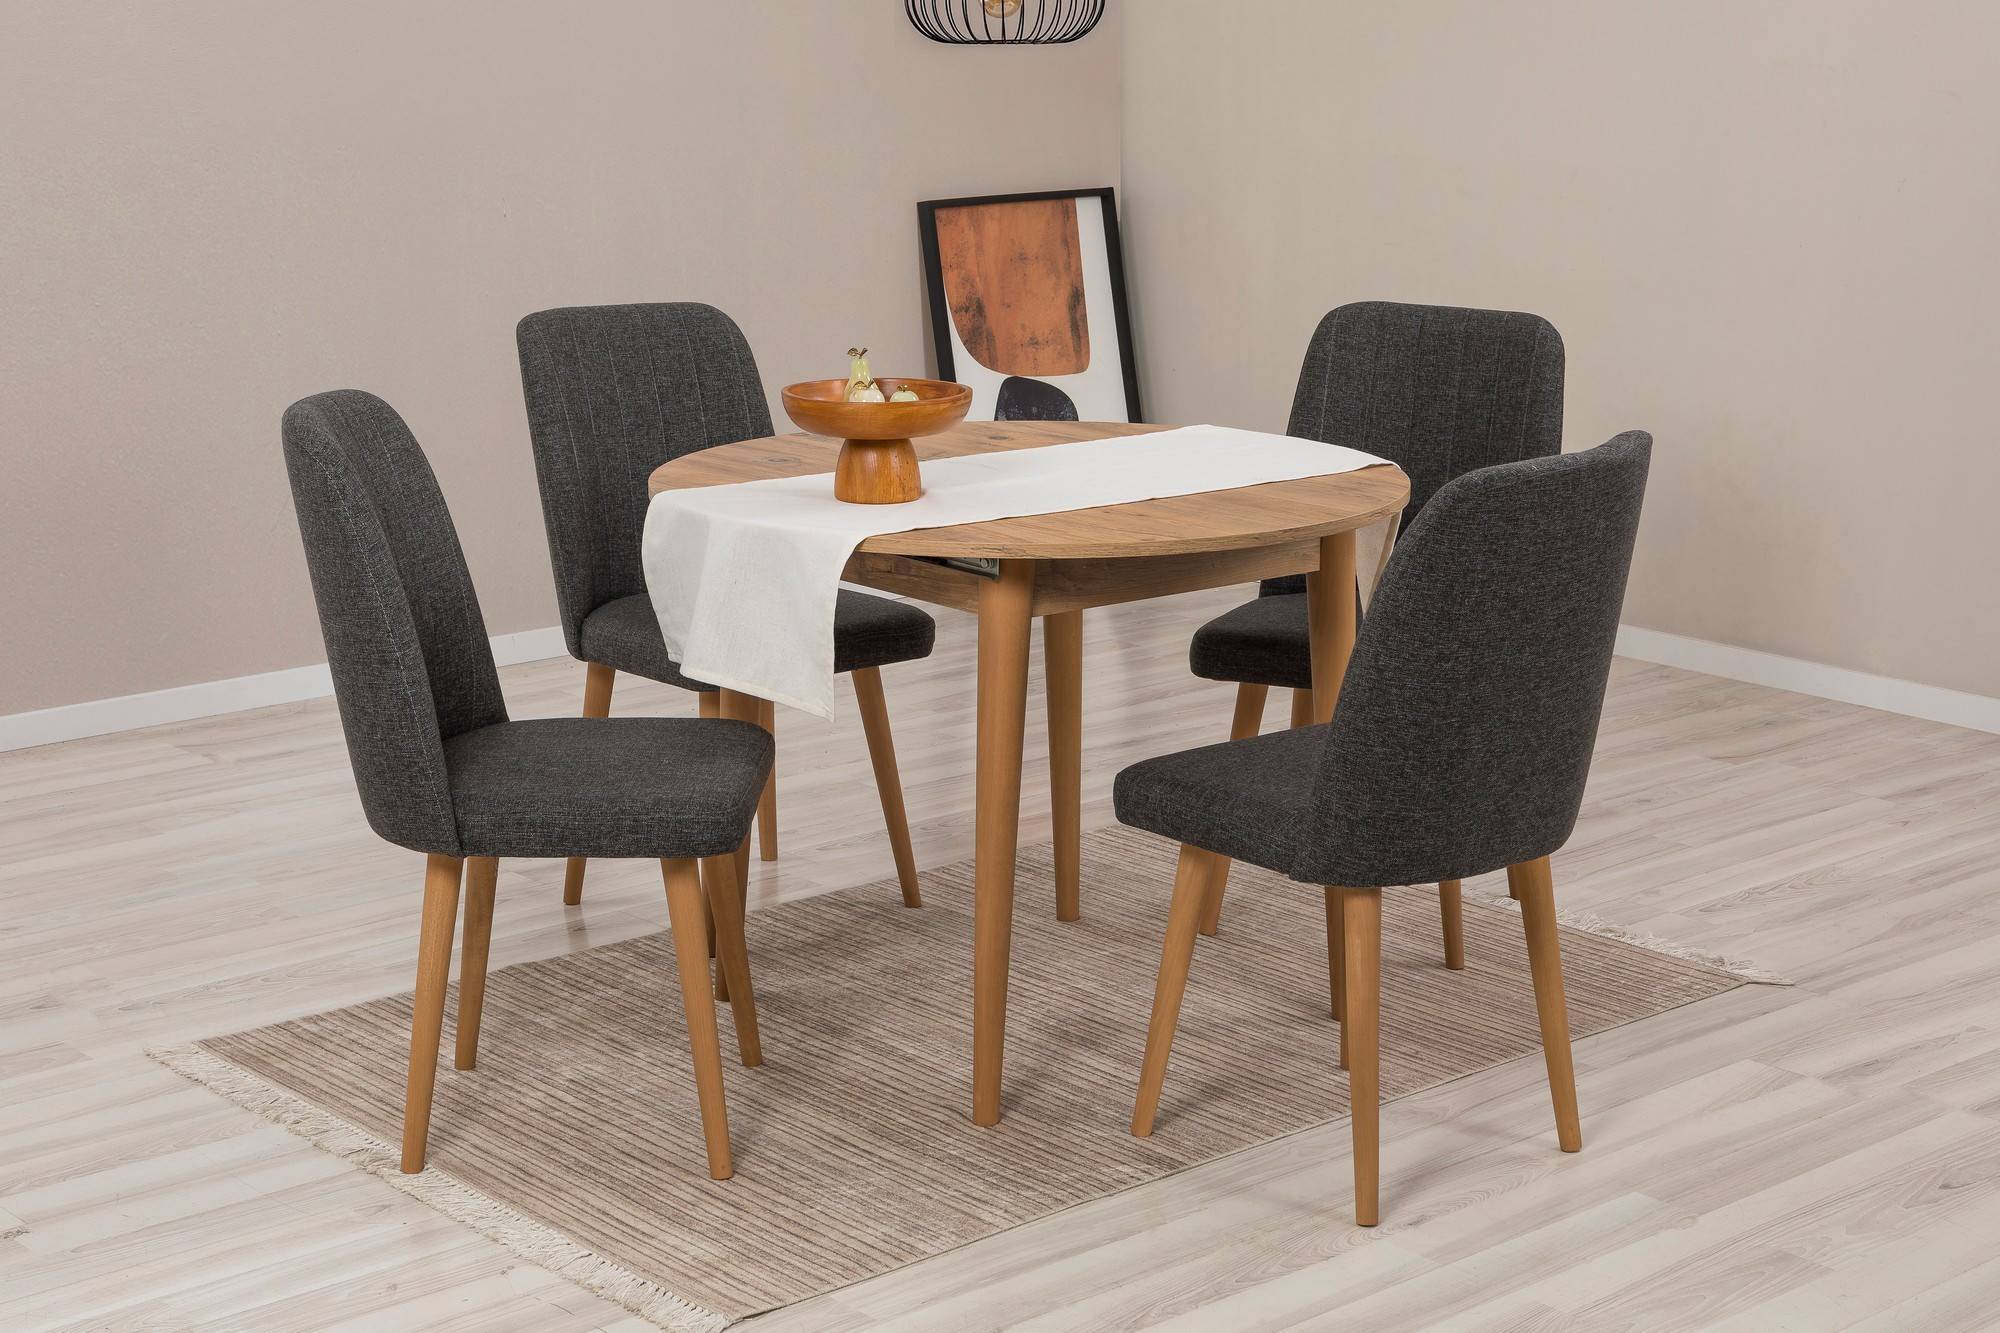 Esstisch-Set mit ausziehbarem runden Tisch und 4 Stühlen Malva, helles Holz und anthrazitfarbenem Stoff.